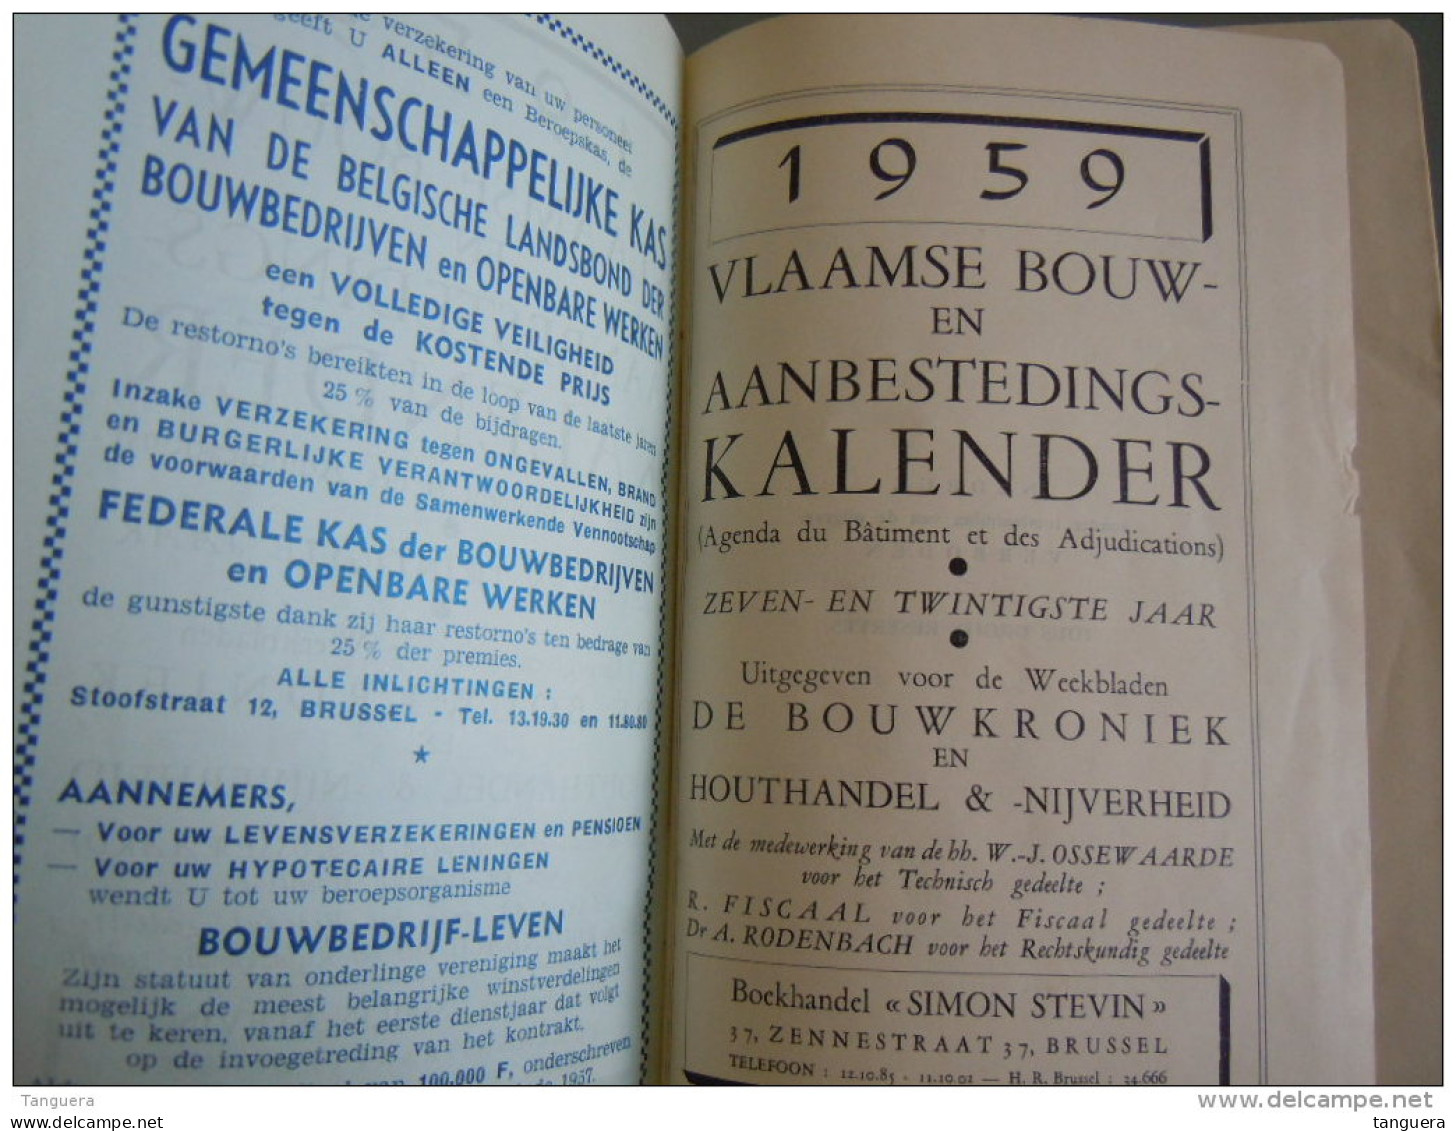 Vlaamse bouw-en aanbestedingskalender 1959 Uitgave de bouwkroniek Brussel Agenda du batiment et des adjudications